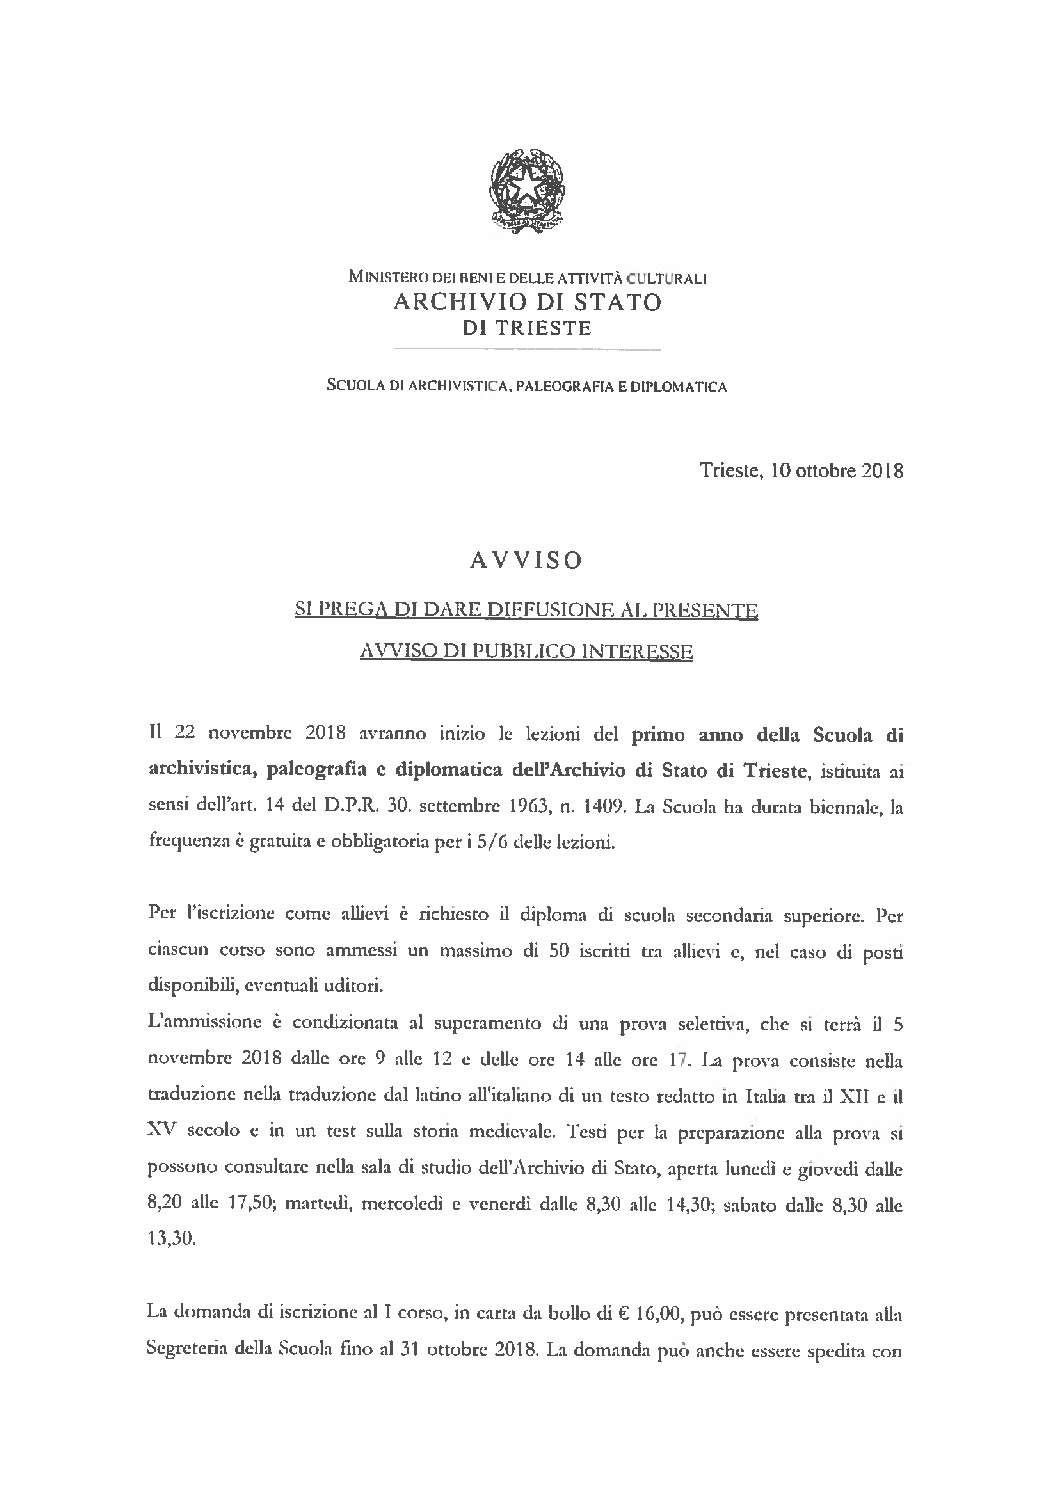 Iscrizioni alla Scuola di archivistica, paleografia e diplomatica presso l’Archivio di Stato di Trieste